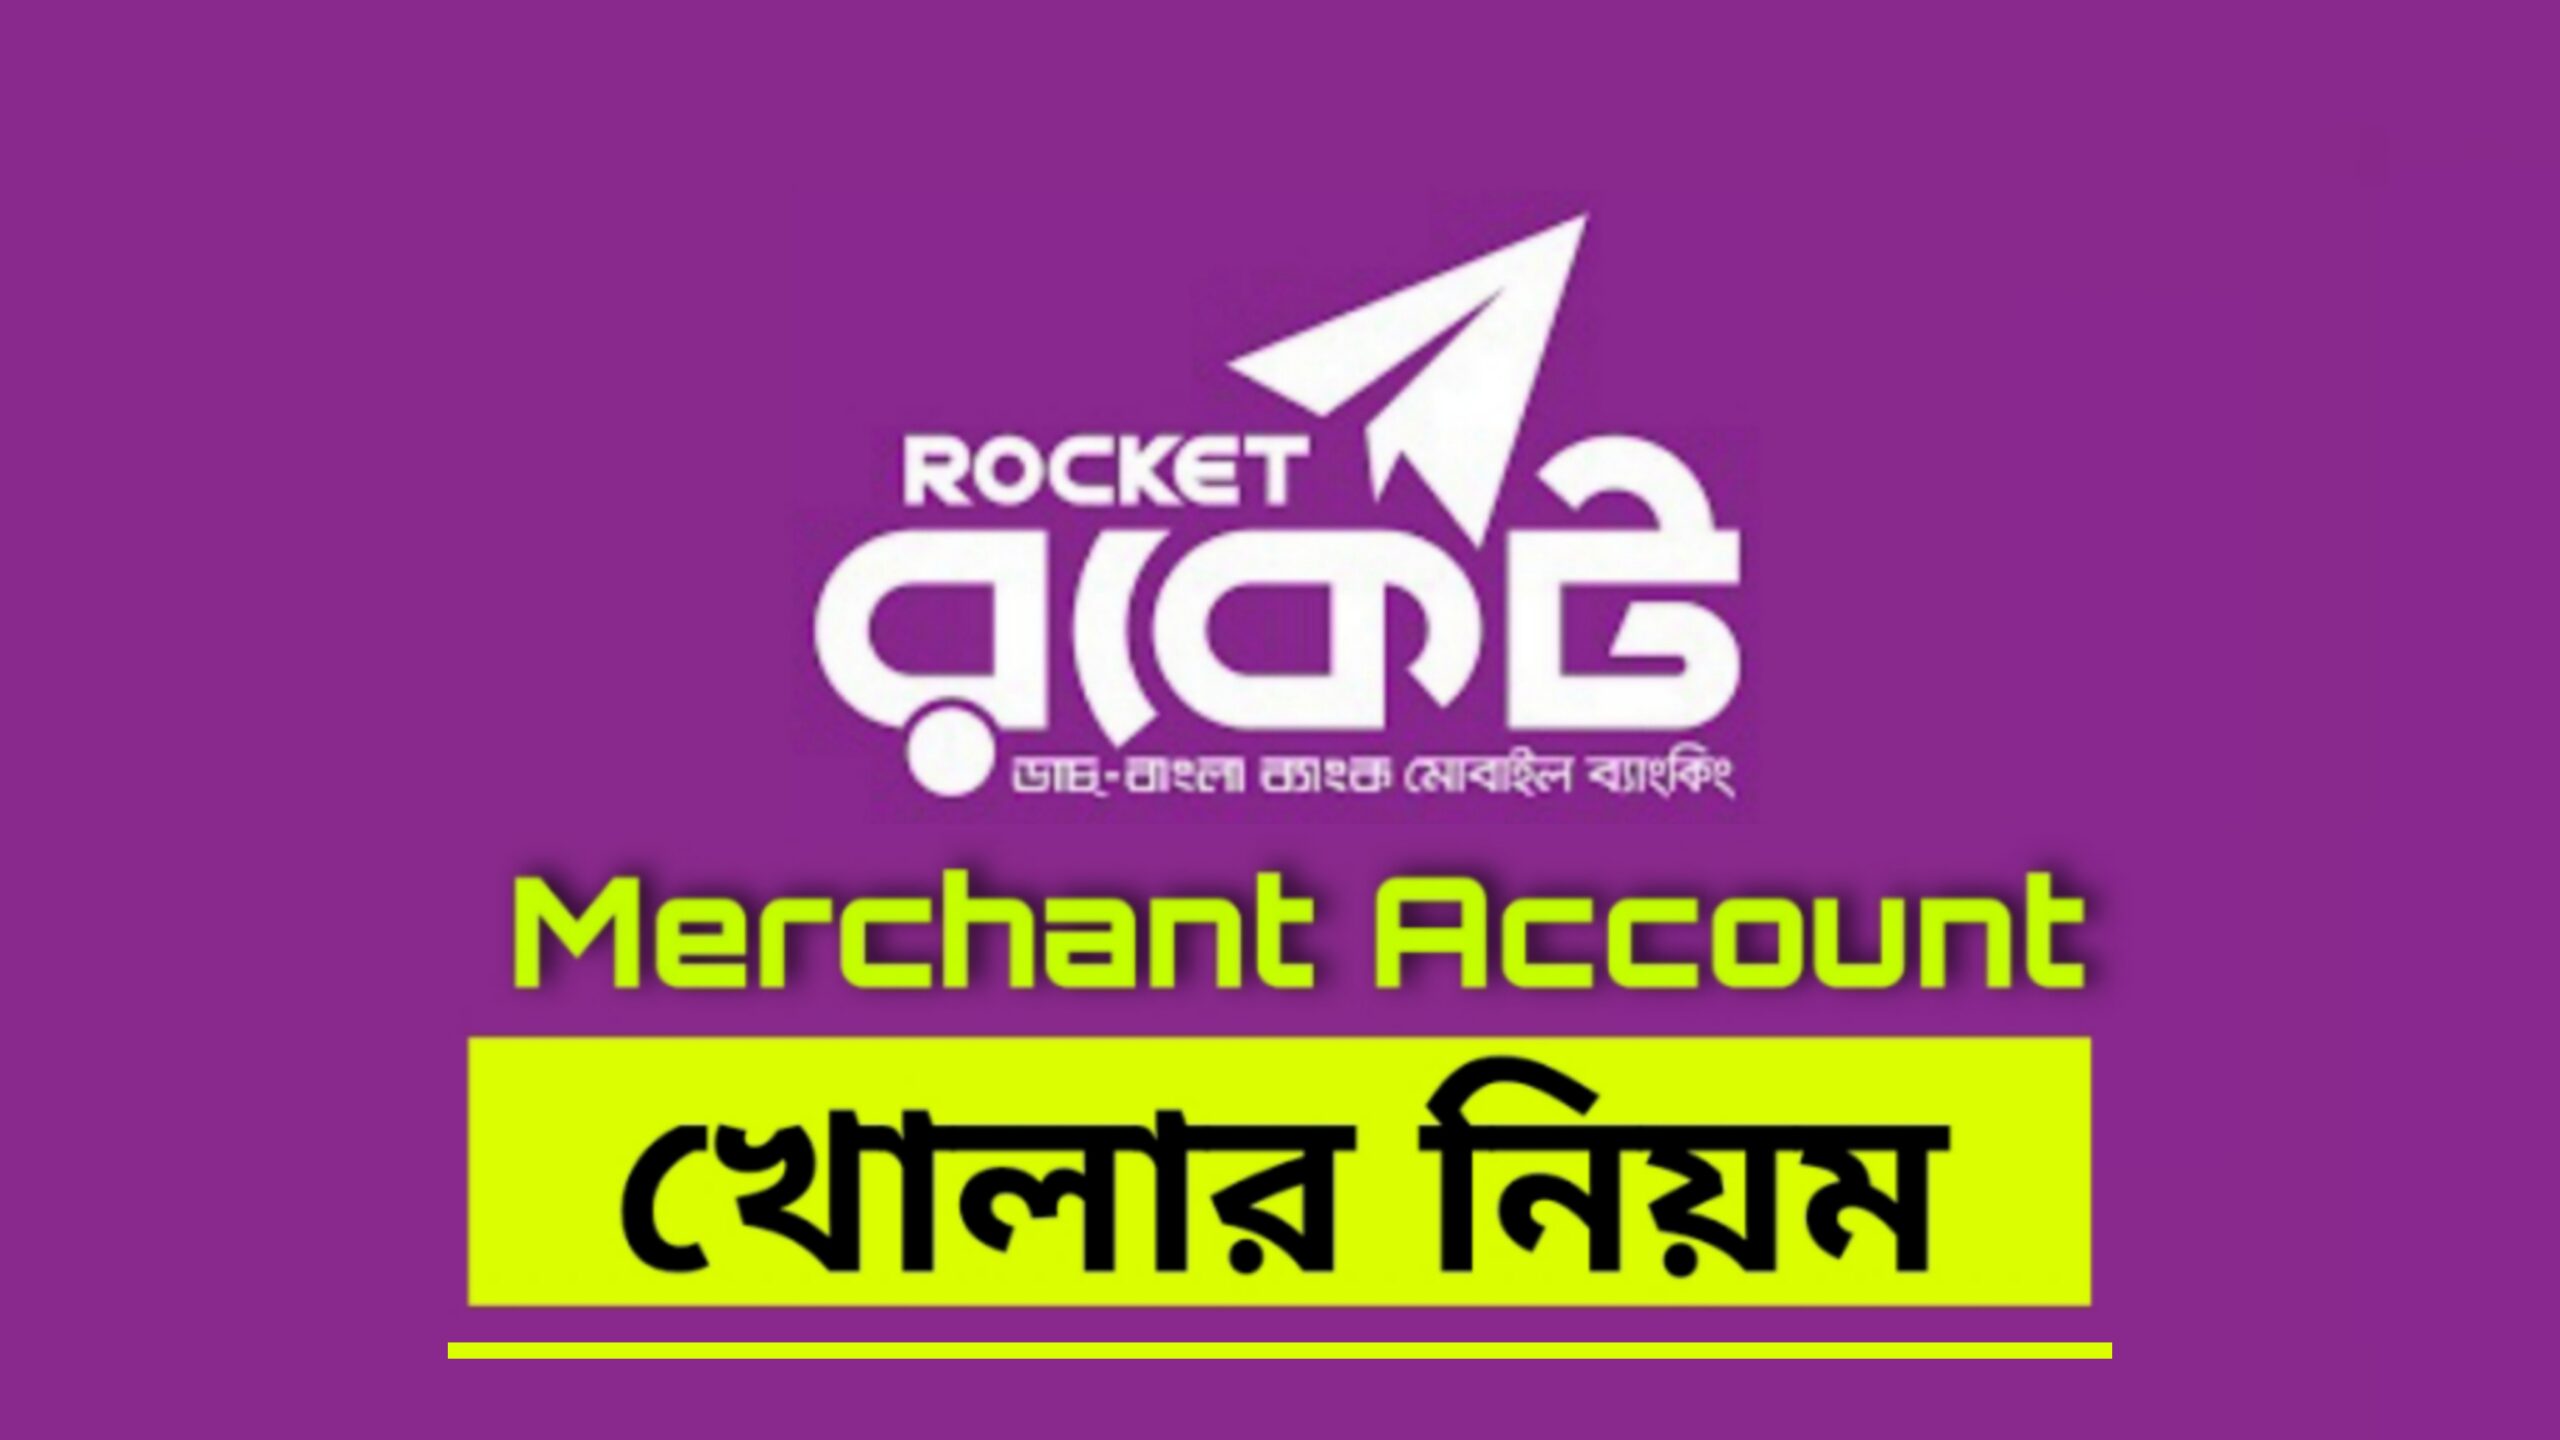 Rocket merchant account opening